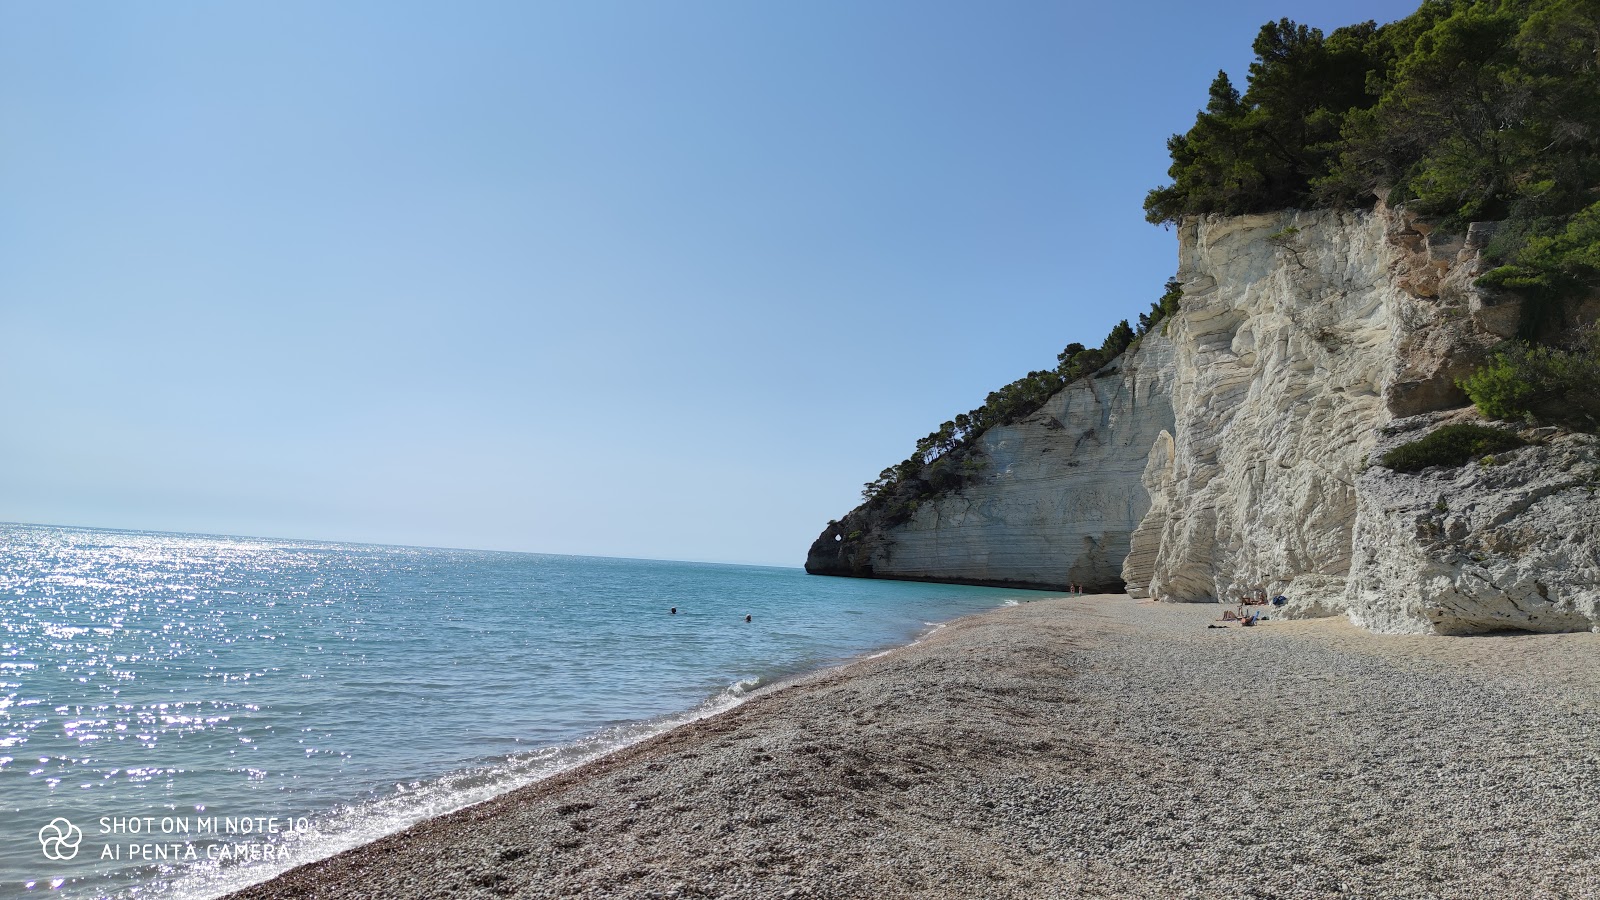 Vignanotica Plajı'in fotoğrafı hafif ince çakıl taş yüzey ile